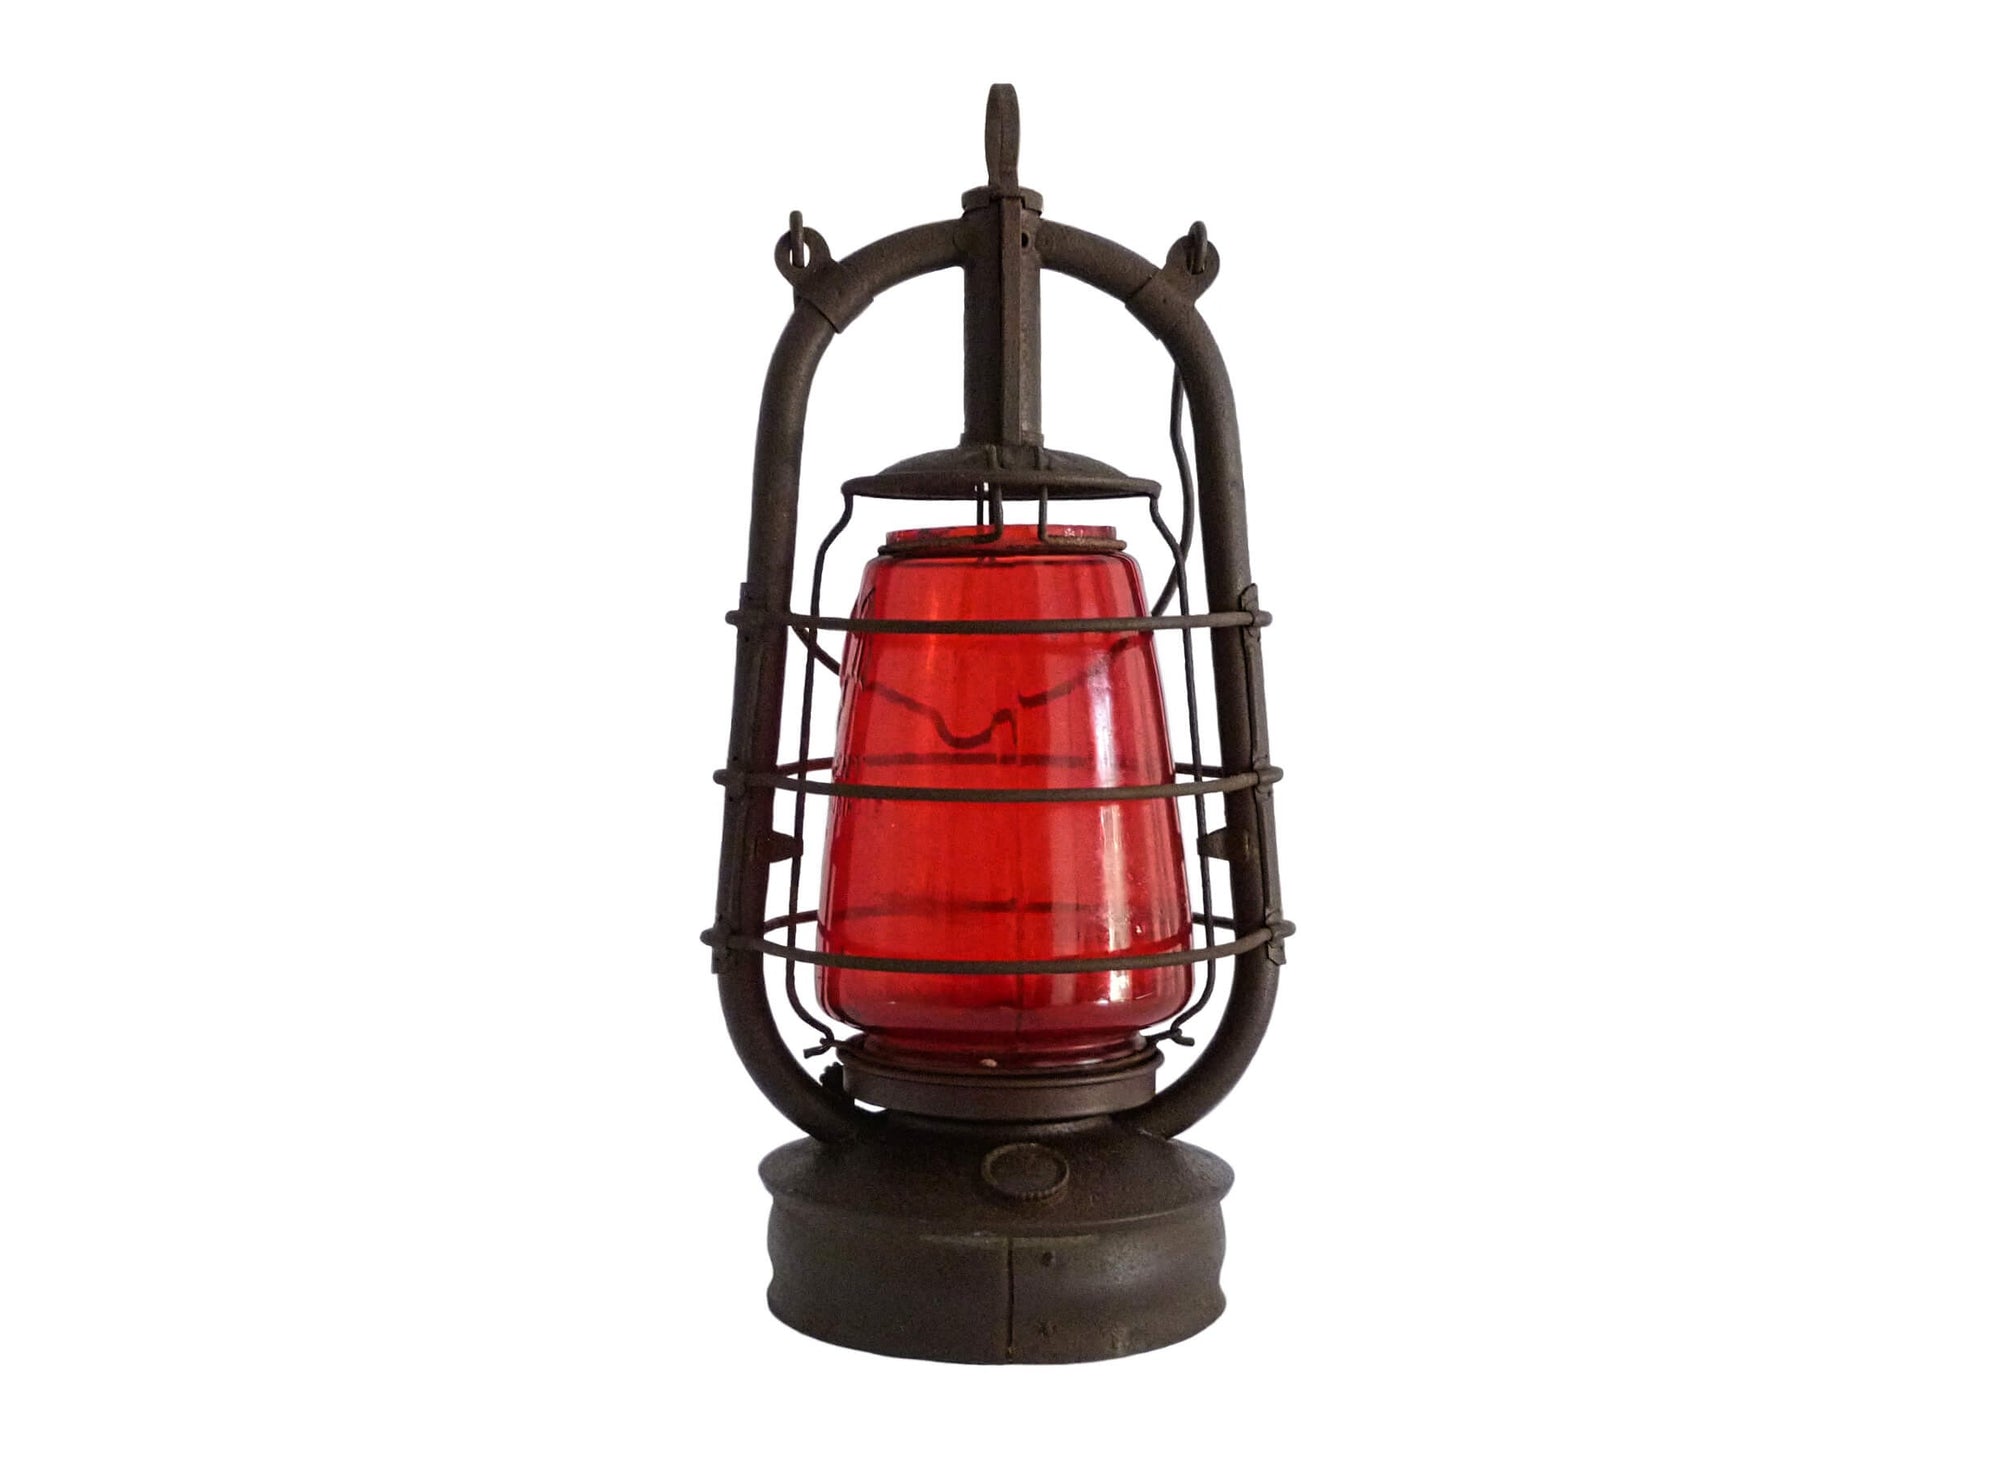 FR. Stübgen & Co. - Fledermaus 2850, Red Railroad Lantern, 1927-1930